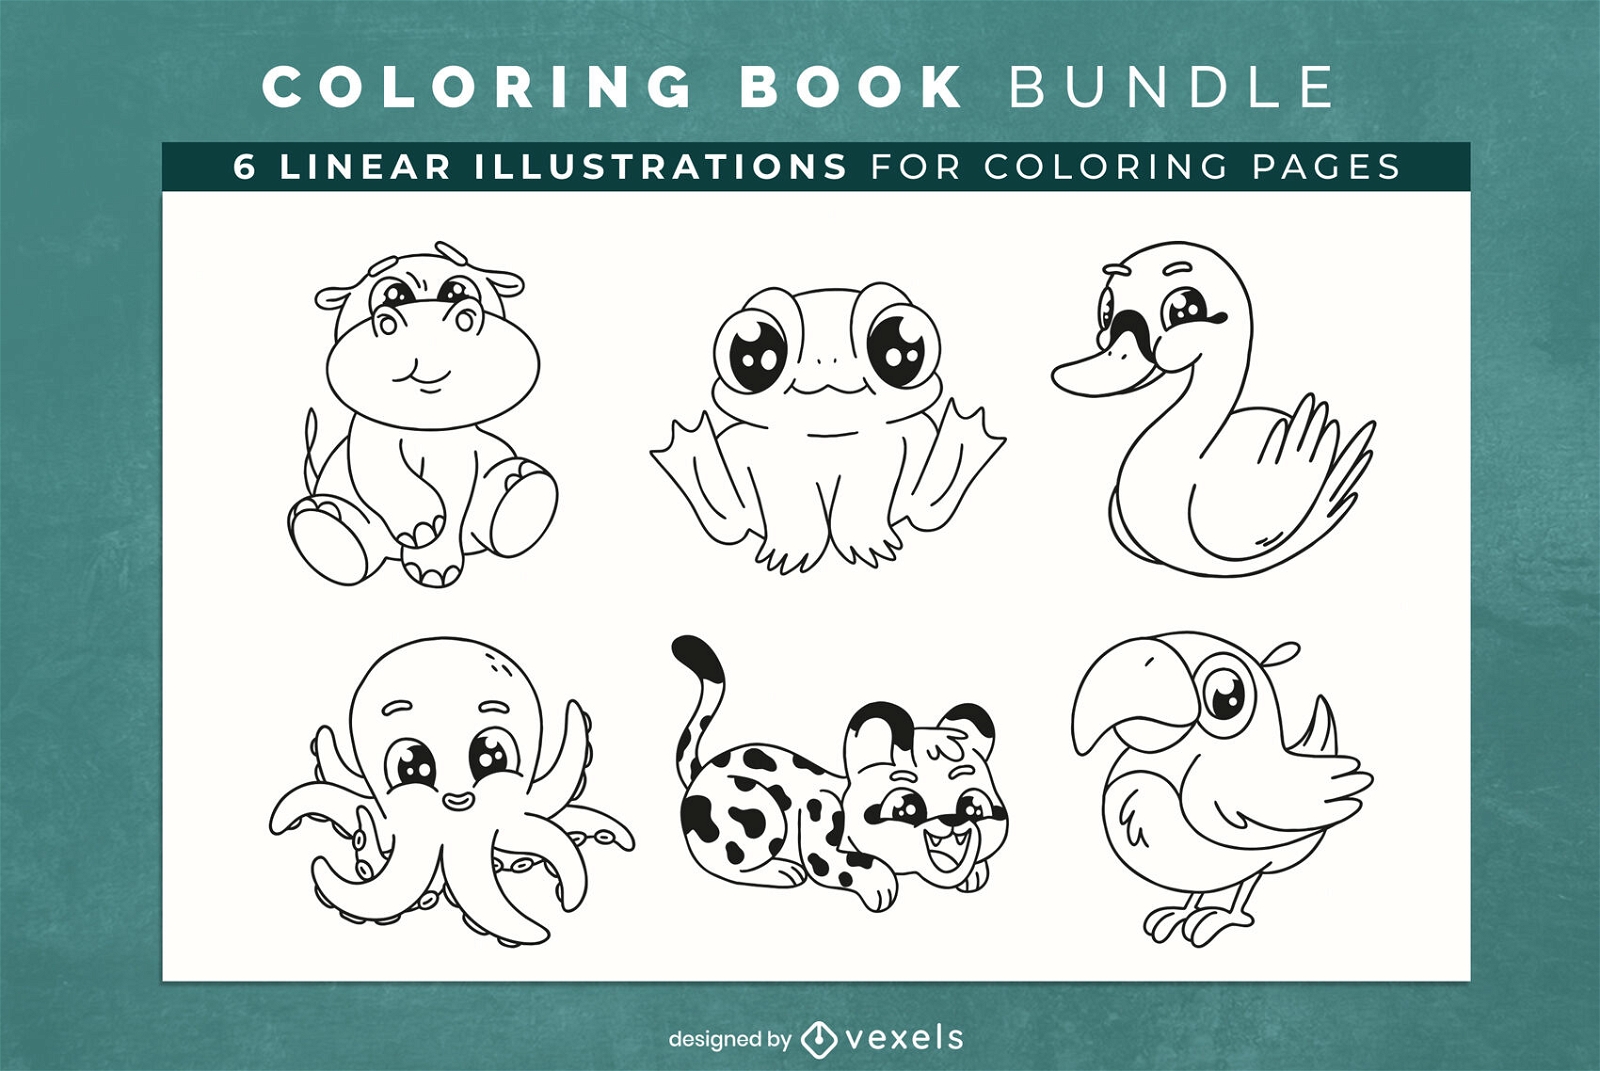 Bonitos personajes de animales para colorear páginas de diseño de libros.